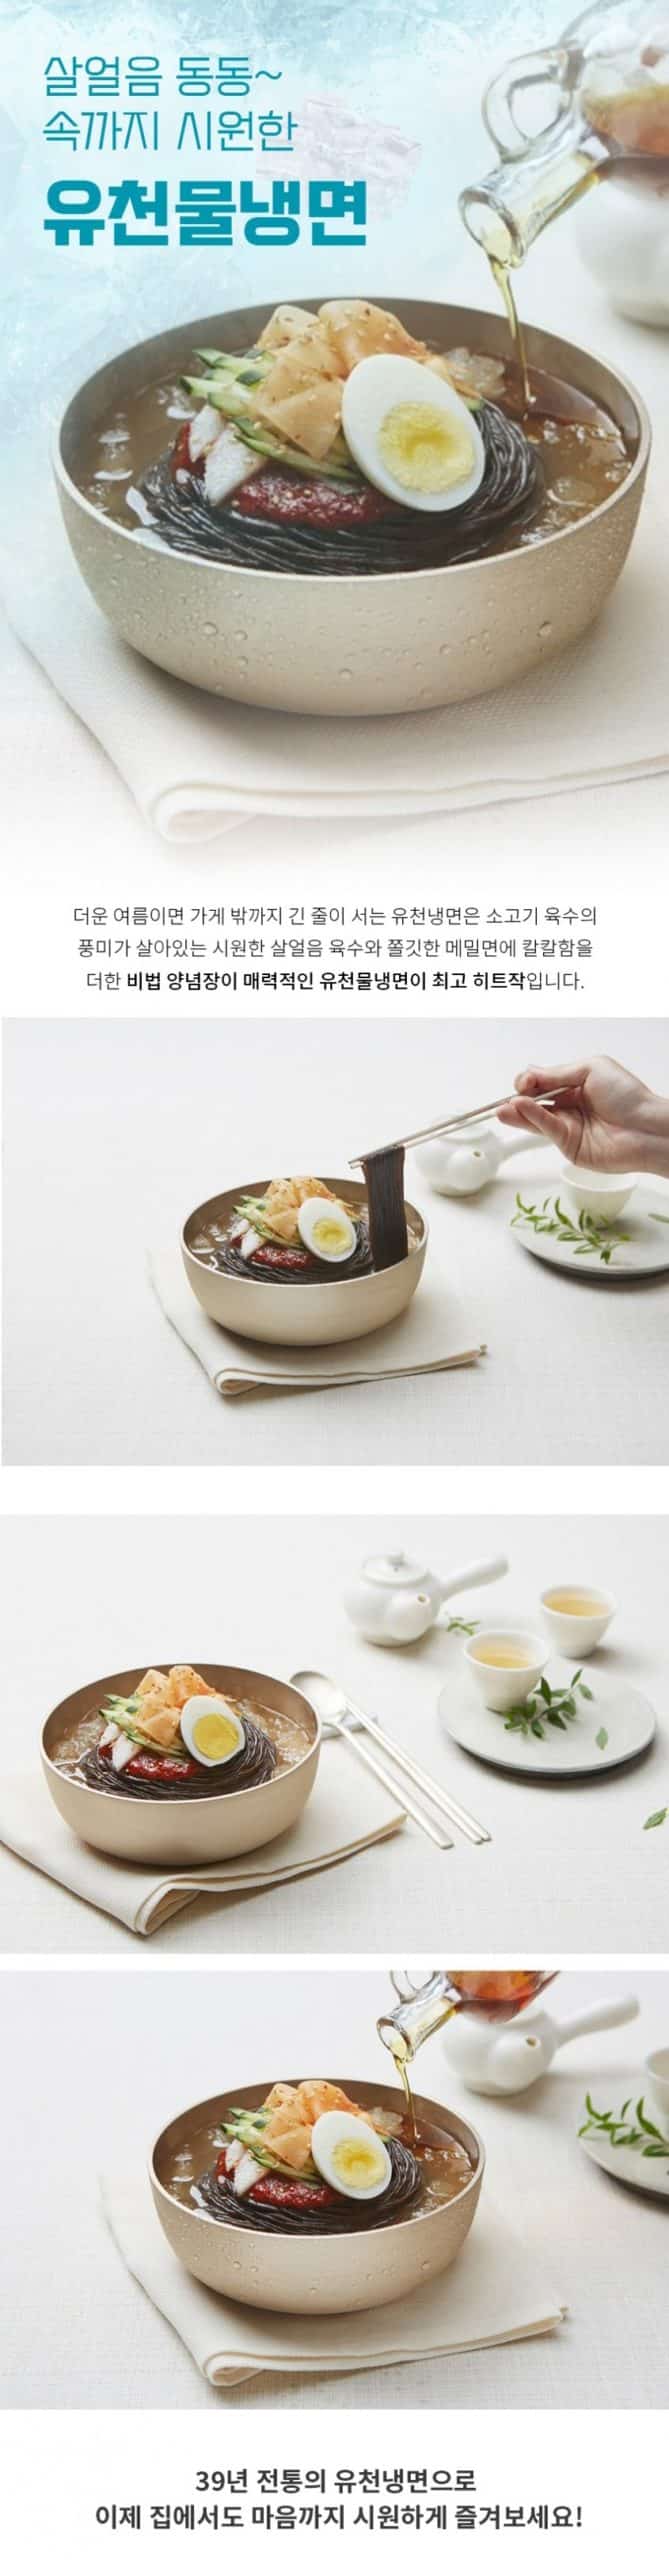 韓國食品-[유천냉면] 물냉면 2인세트 1100g